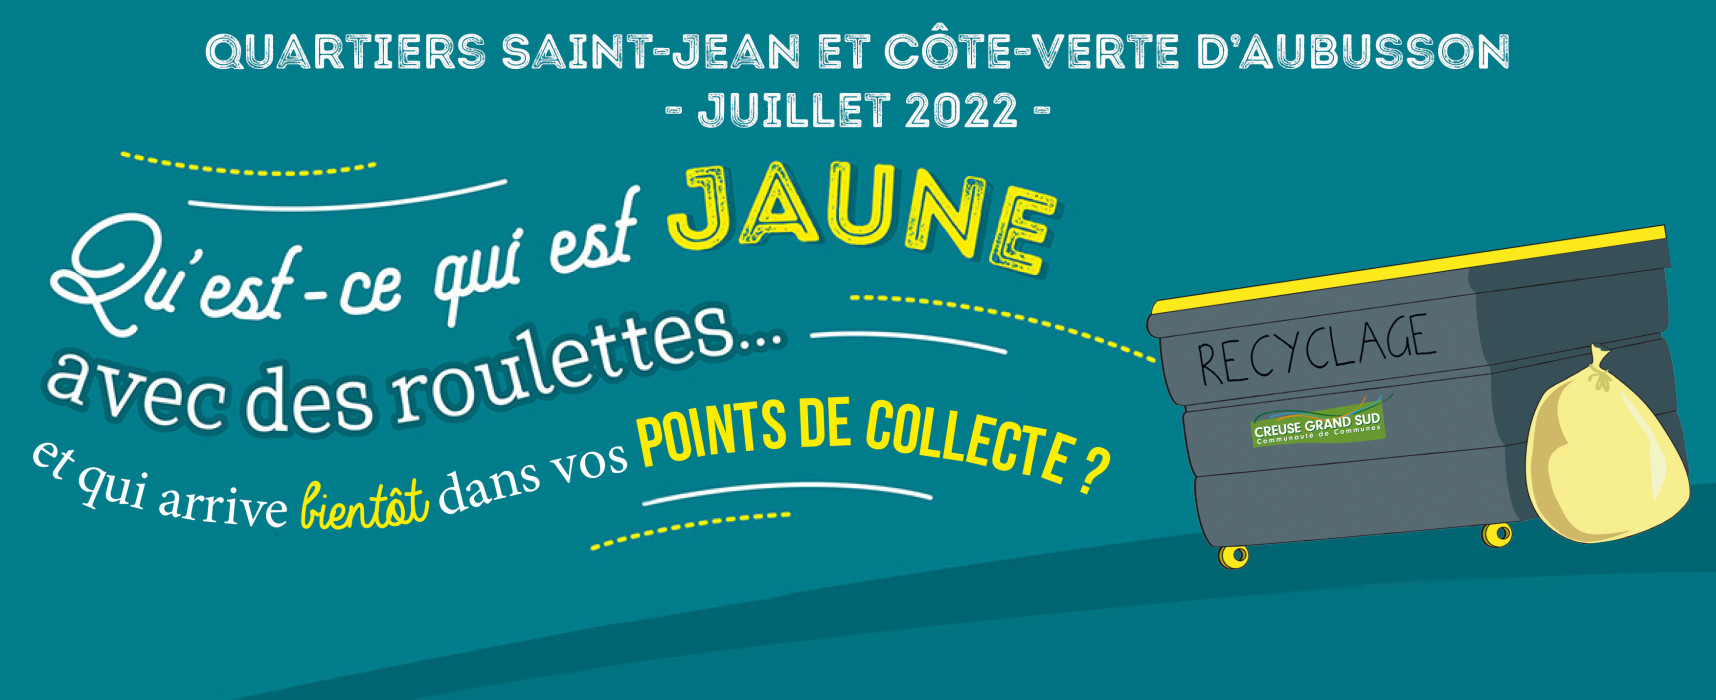 Expérimentation – Mise en place de bacs jaunes collectifs dans les quartiers Saint-Jean et Côte-Verte d’Aubusson – juillet 2022